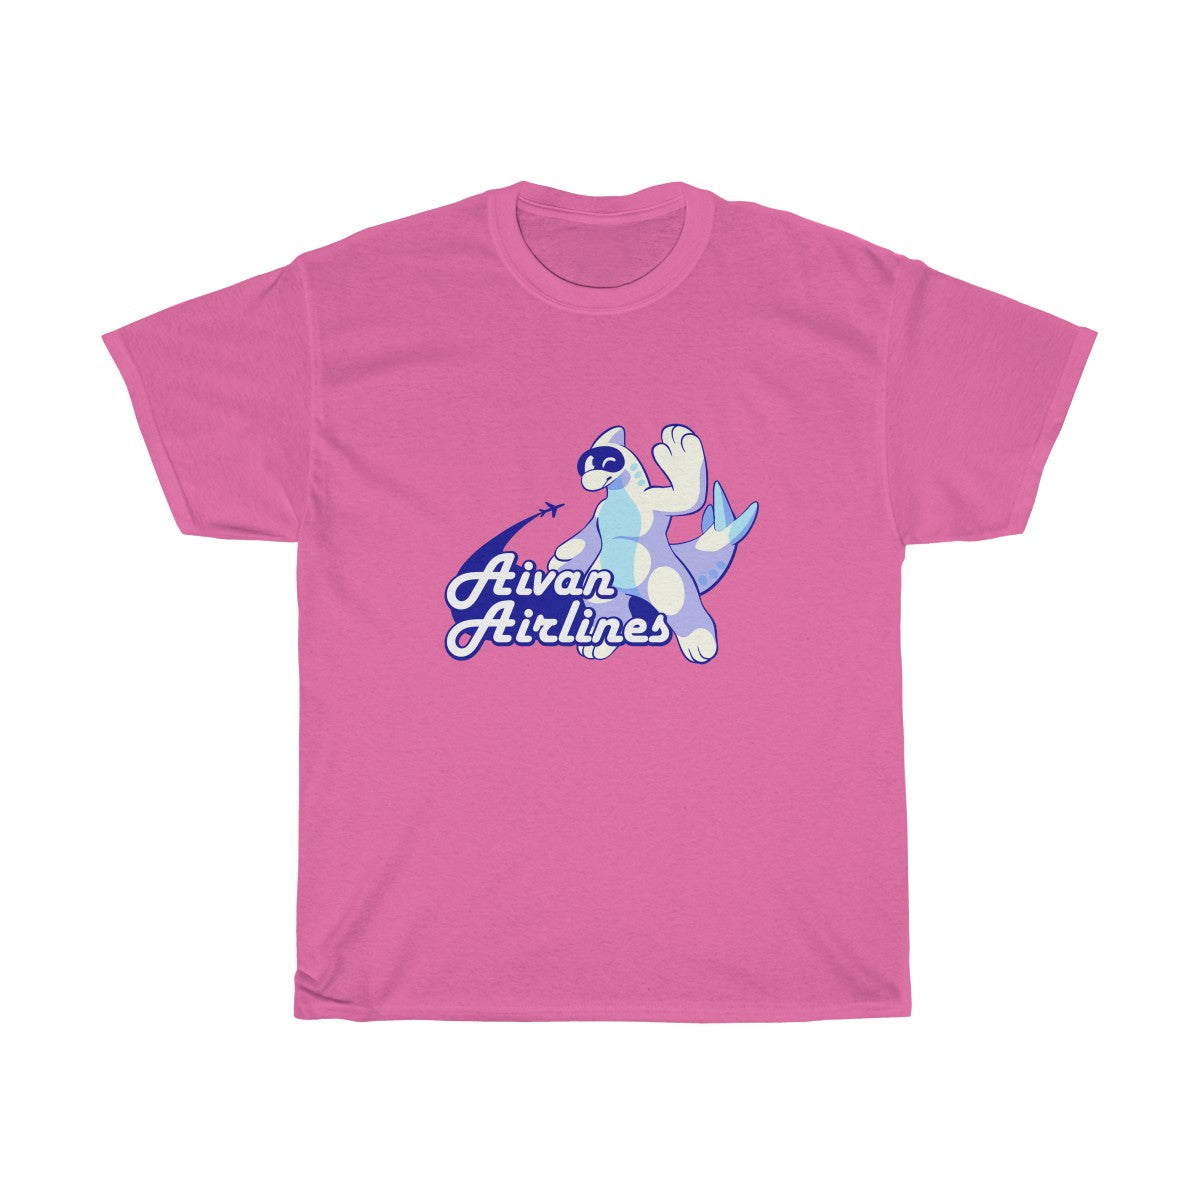 Avian Airlines - T-Shirt T-Shirt Motfal Pink S 